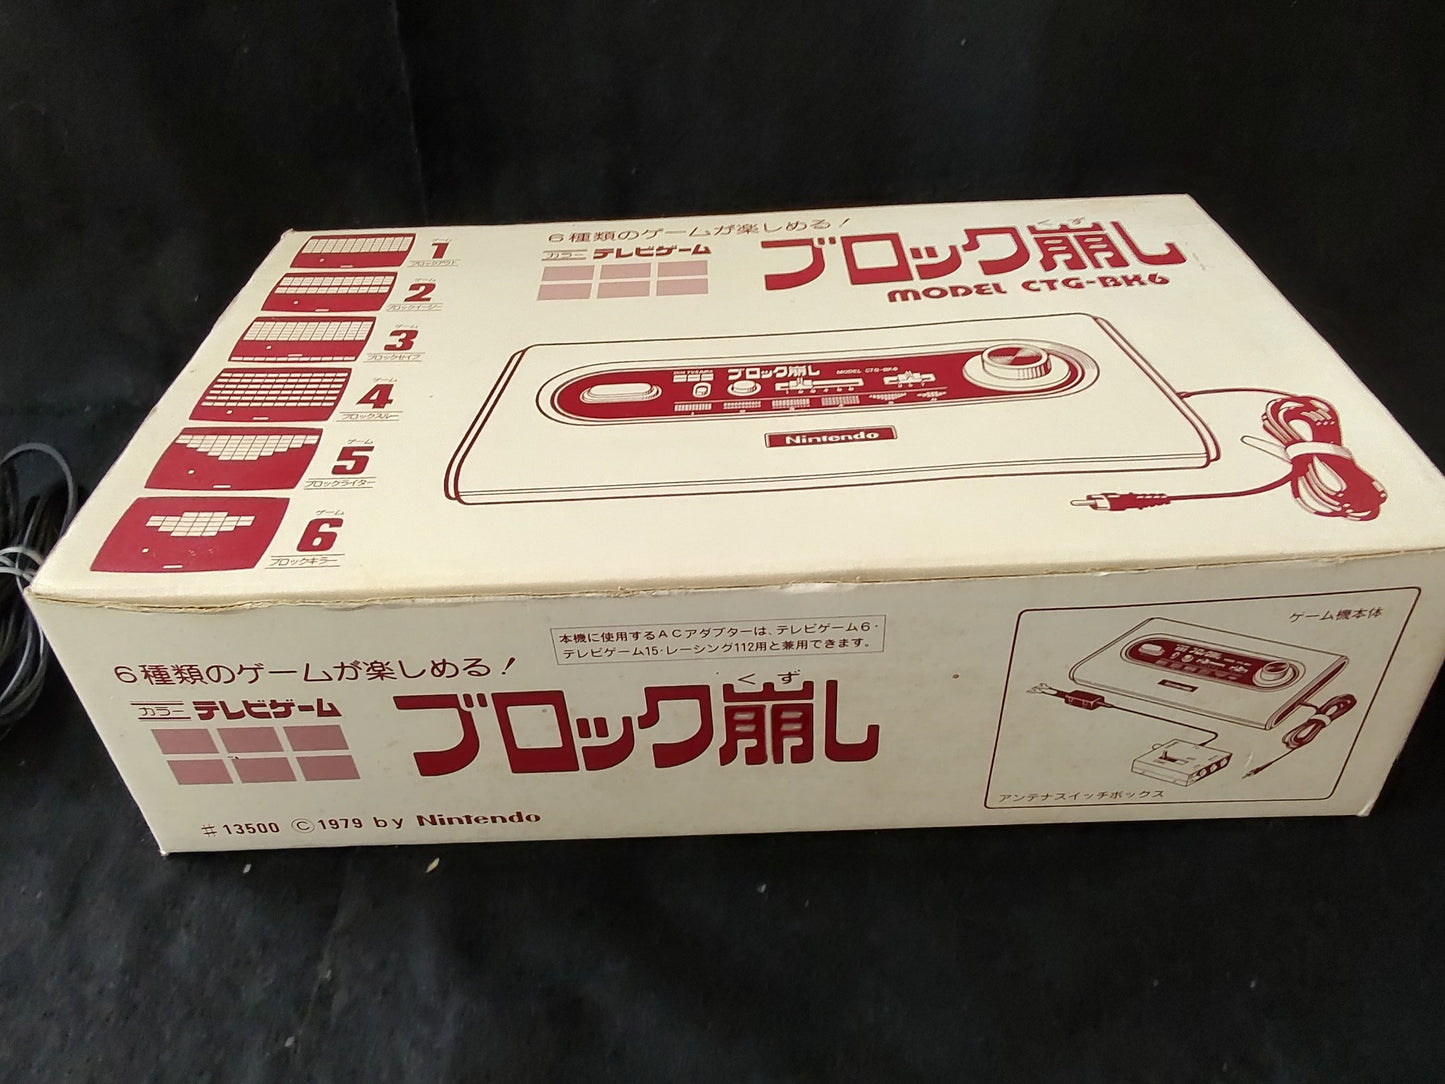 Nintendo PONG BLOCK Kuzushi CTG-BK6 console system,PSU,Boxed set/Tested-f0817-